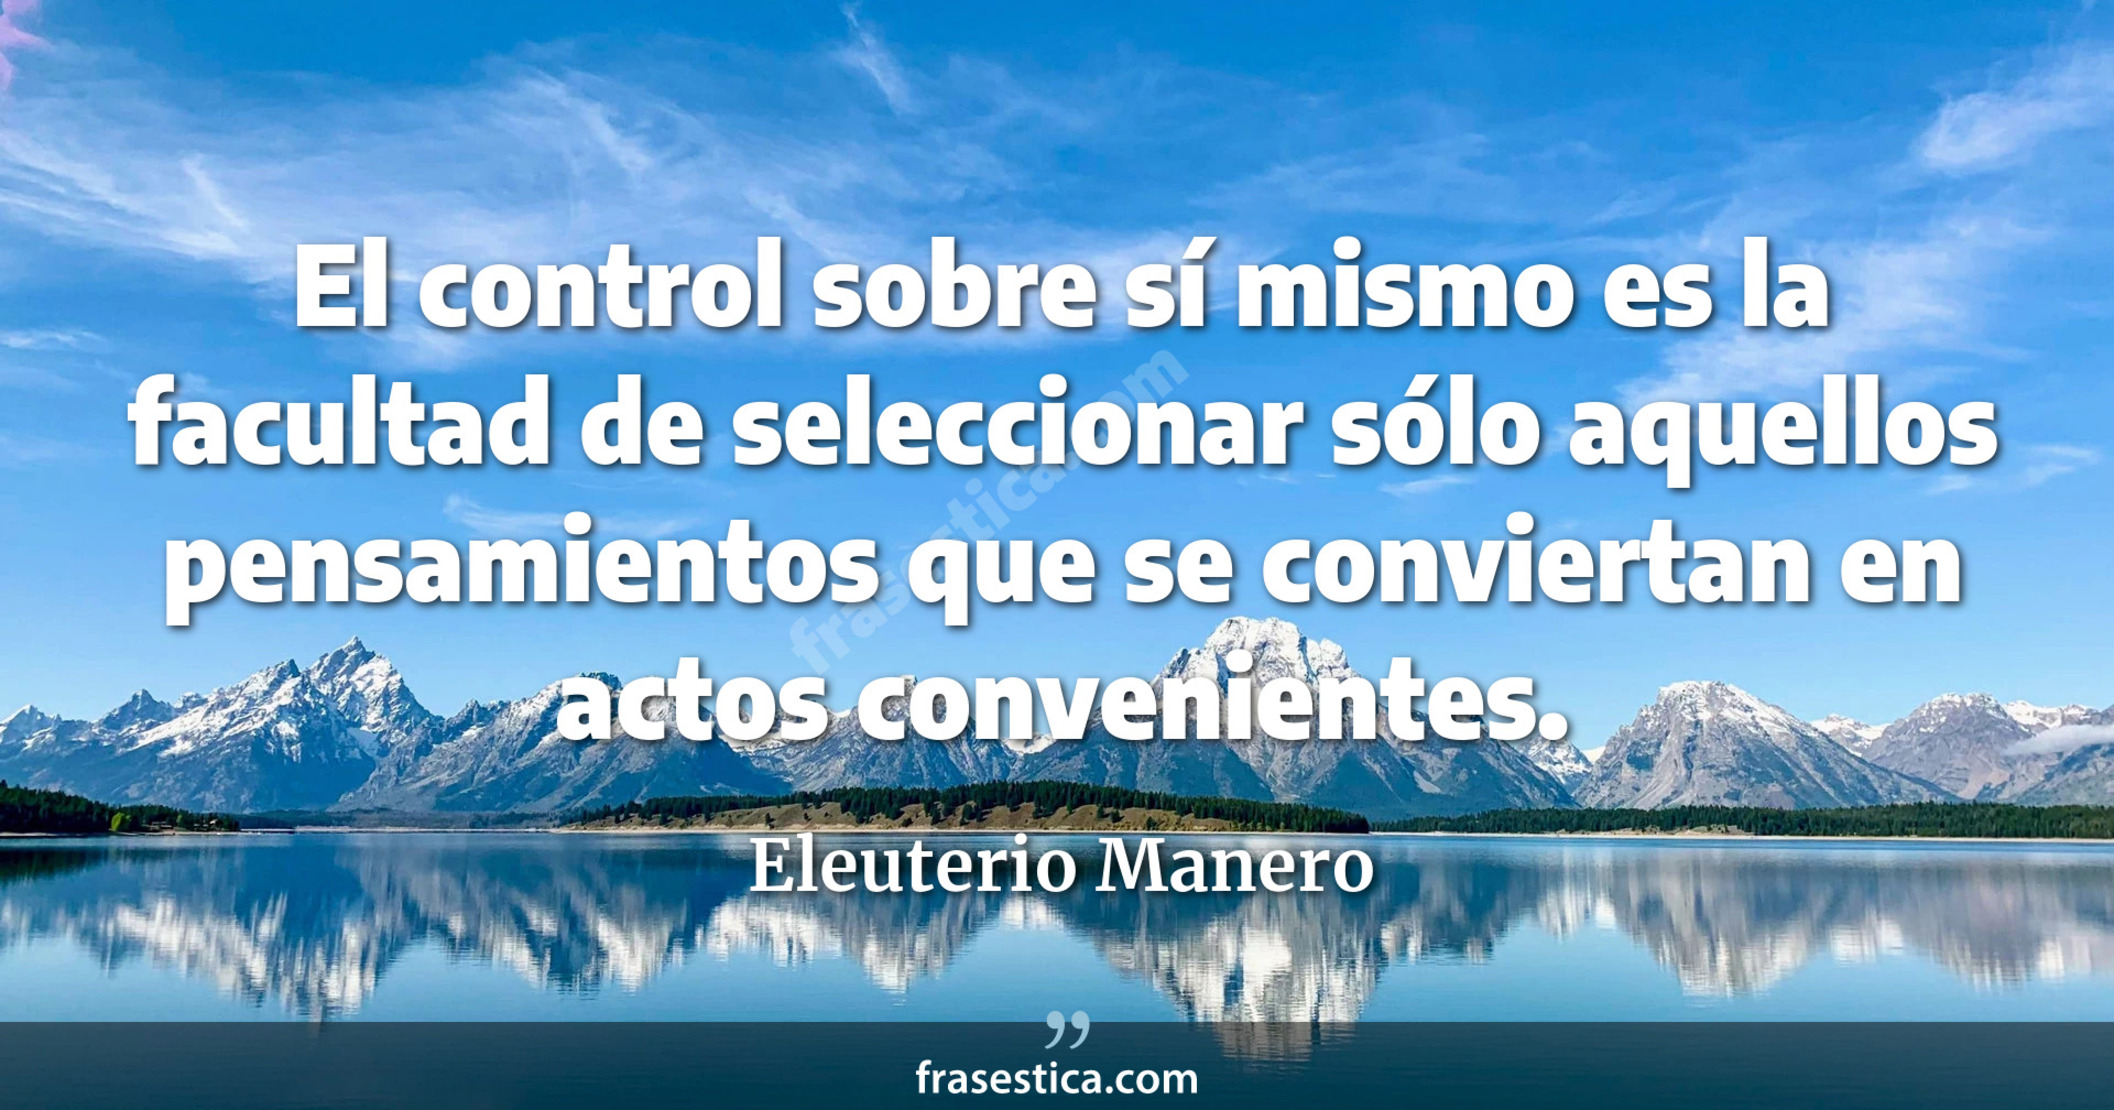 El control sobre sí mismo es la facultad de seleccionar sólo aquellos pensamientos que se conviertan en actos convenientes. - Eleuterio Manero